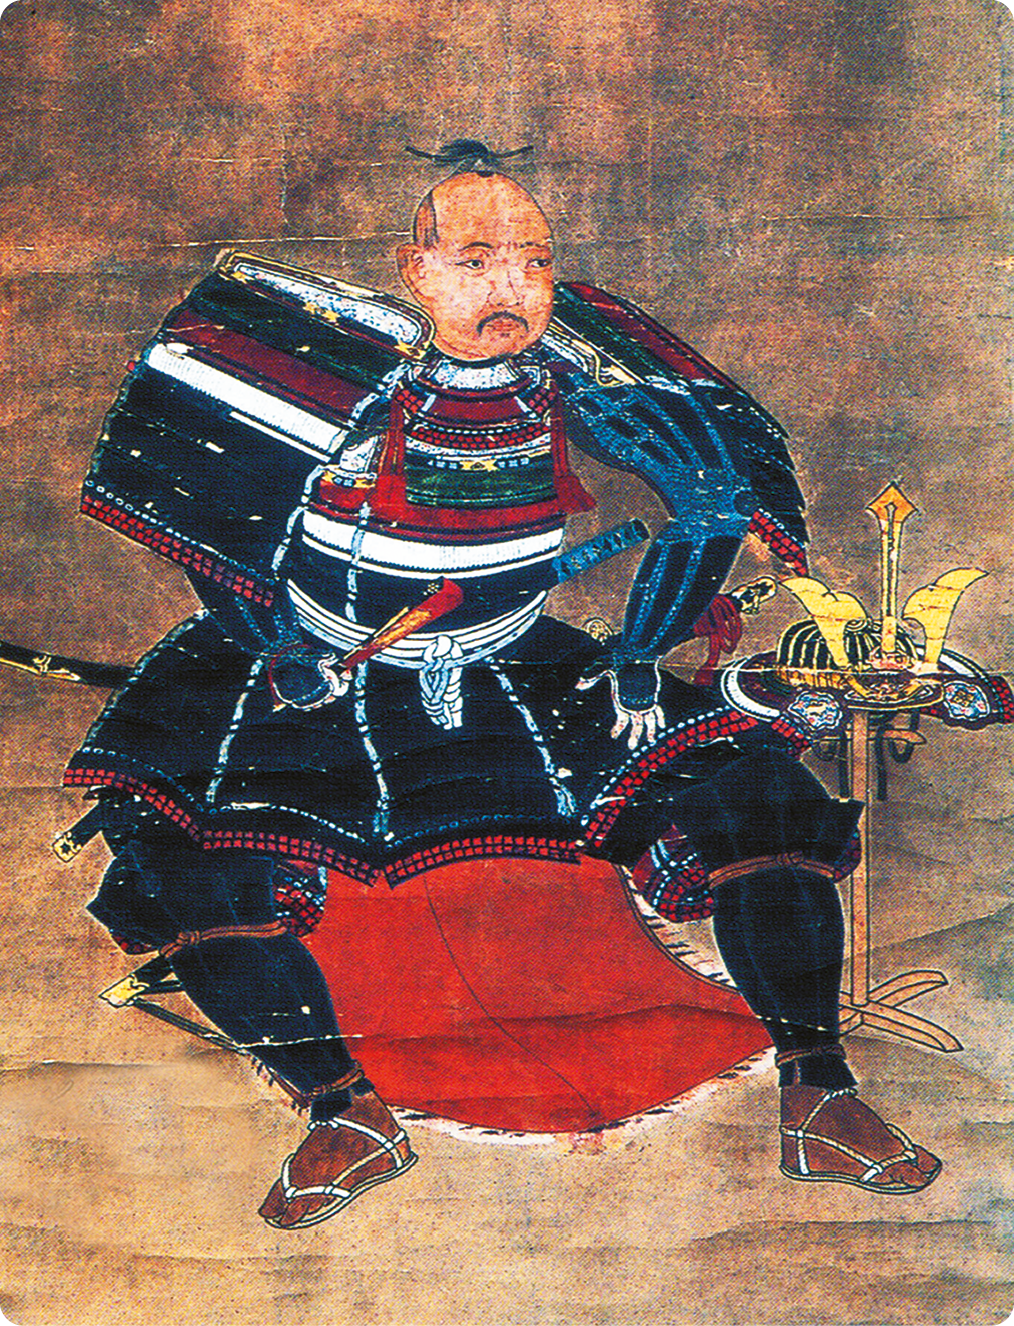 Xilogravura. Um homem, usando uma armadura com ombreiras, saia e proteção nas pernas e uma espada pendurada na cintura, está sentado. Ao lado, um capacete com detalhes em dourado.